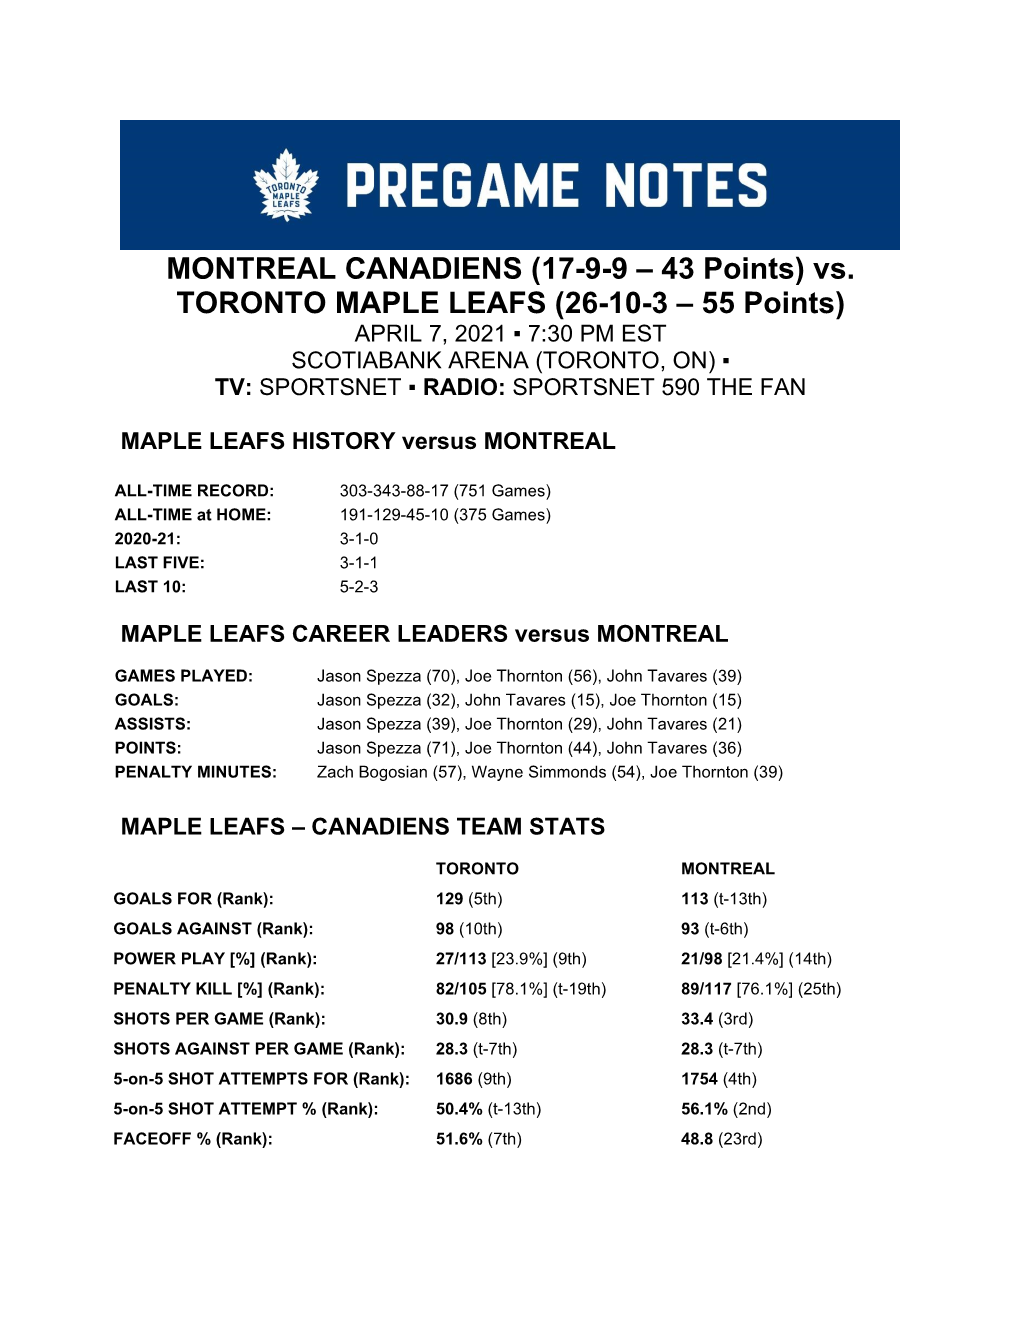 MONTREAL CANADIENS (17-9-9 – 43 Points) Vs. TORONTO